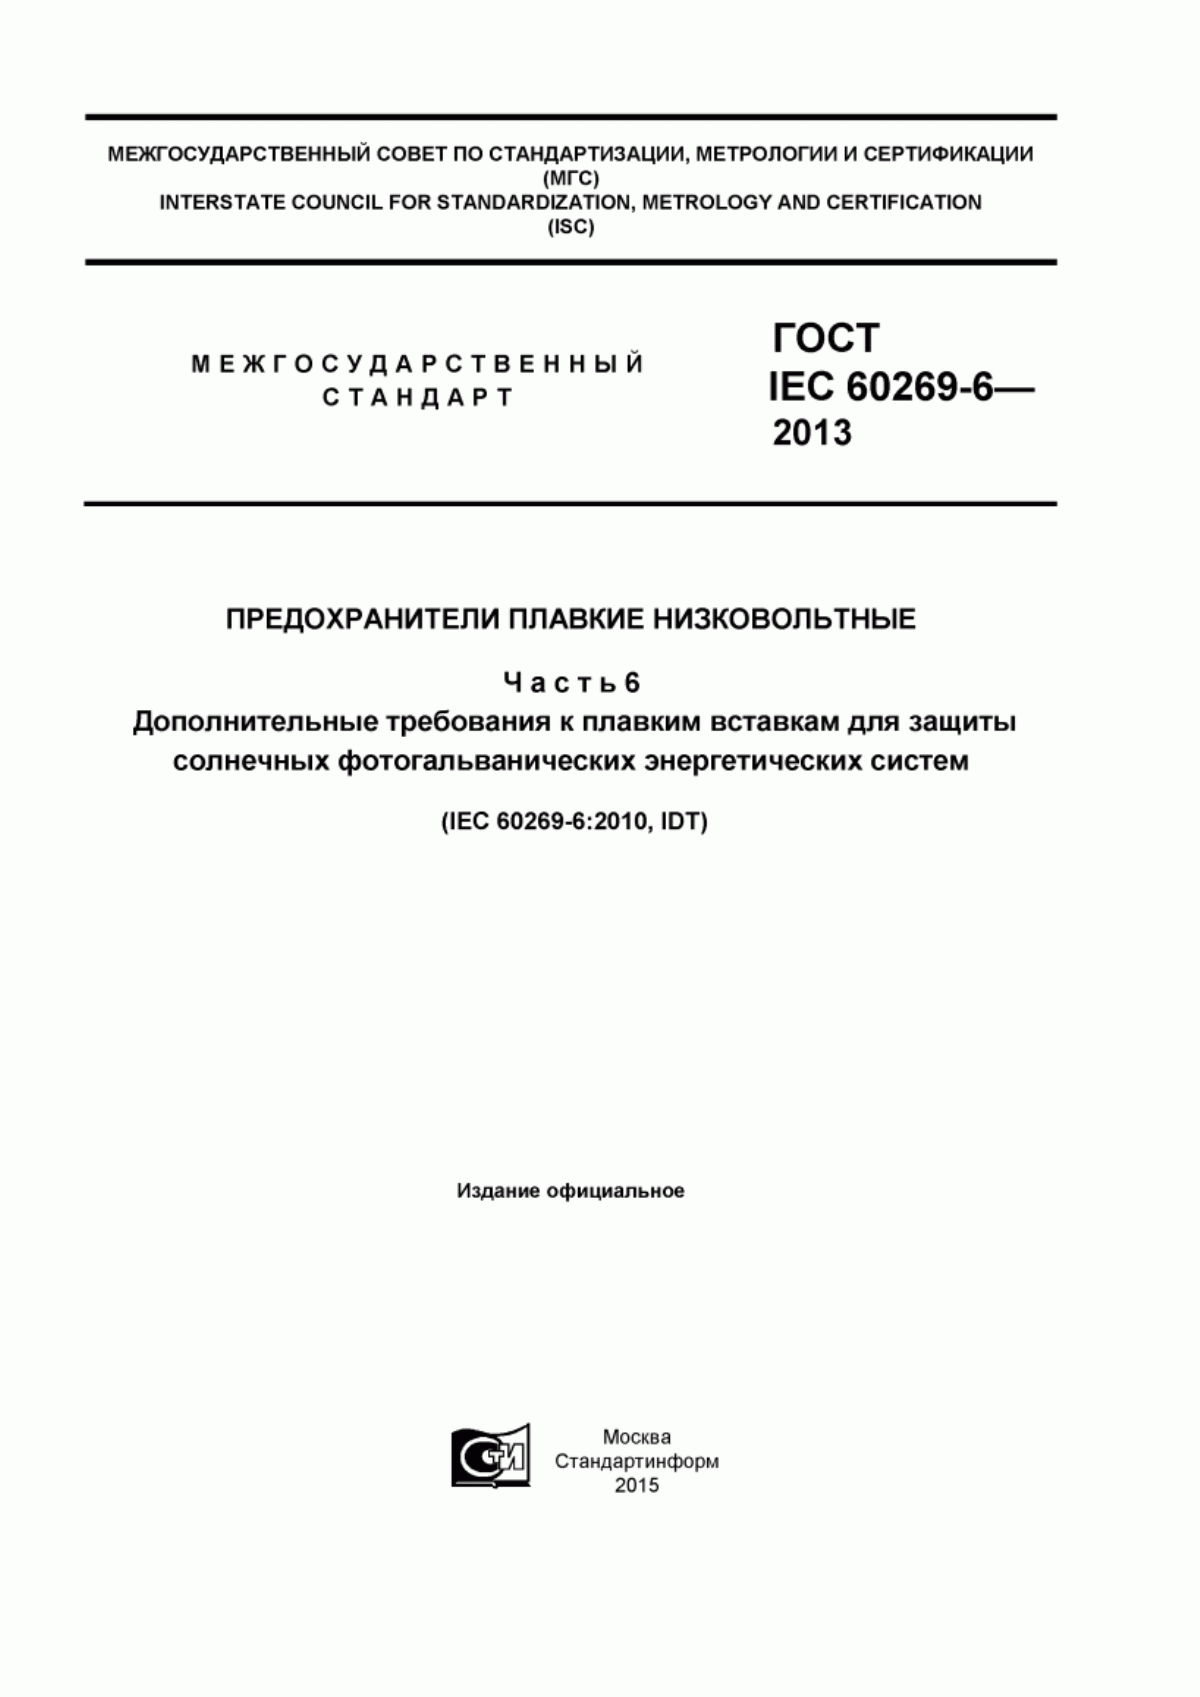 ГОСТ IEC 60269-6-2013 Предохранители плавкие низковольтные. Часть 6. Дополнительные требования к плавким вставкам для защиты солнечных фотогальванических энергетических систем